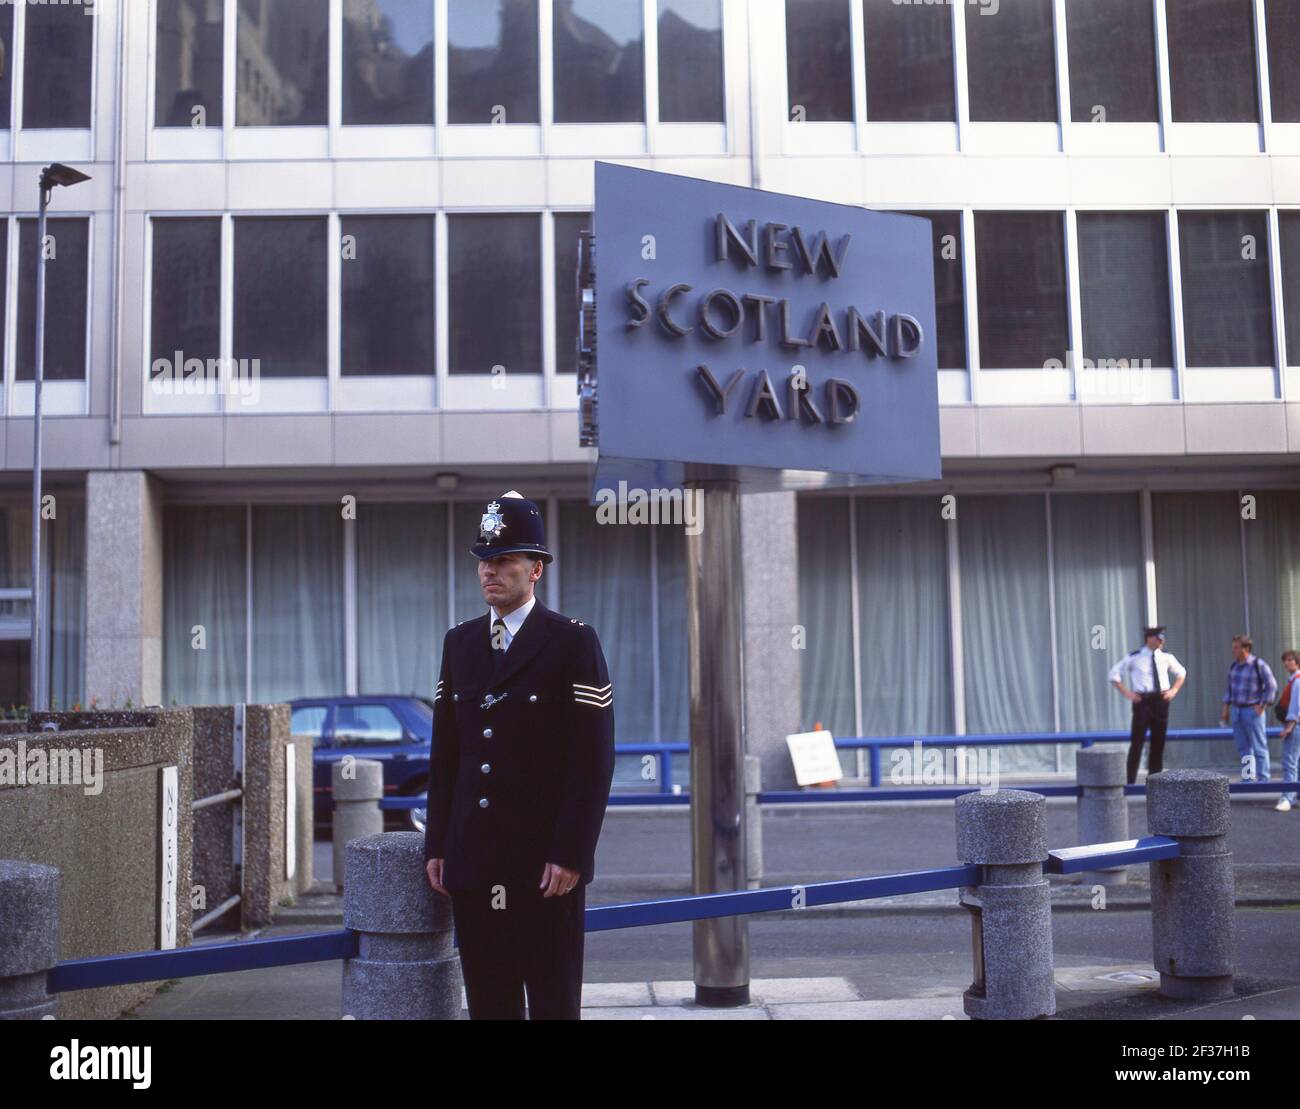 Polizist von New Scotland Yard Schild, Broadway, Westminster, City of Westminster, Greater London, England, Vereinigtes Königreich Stockfoto